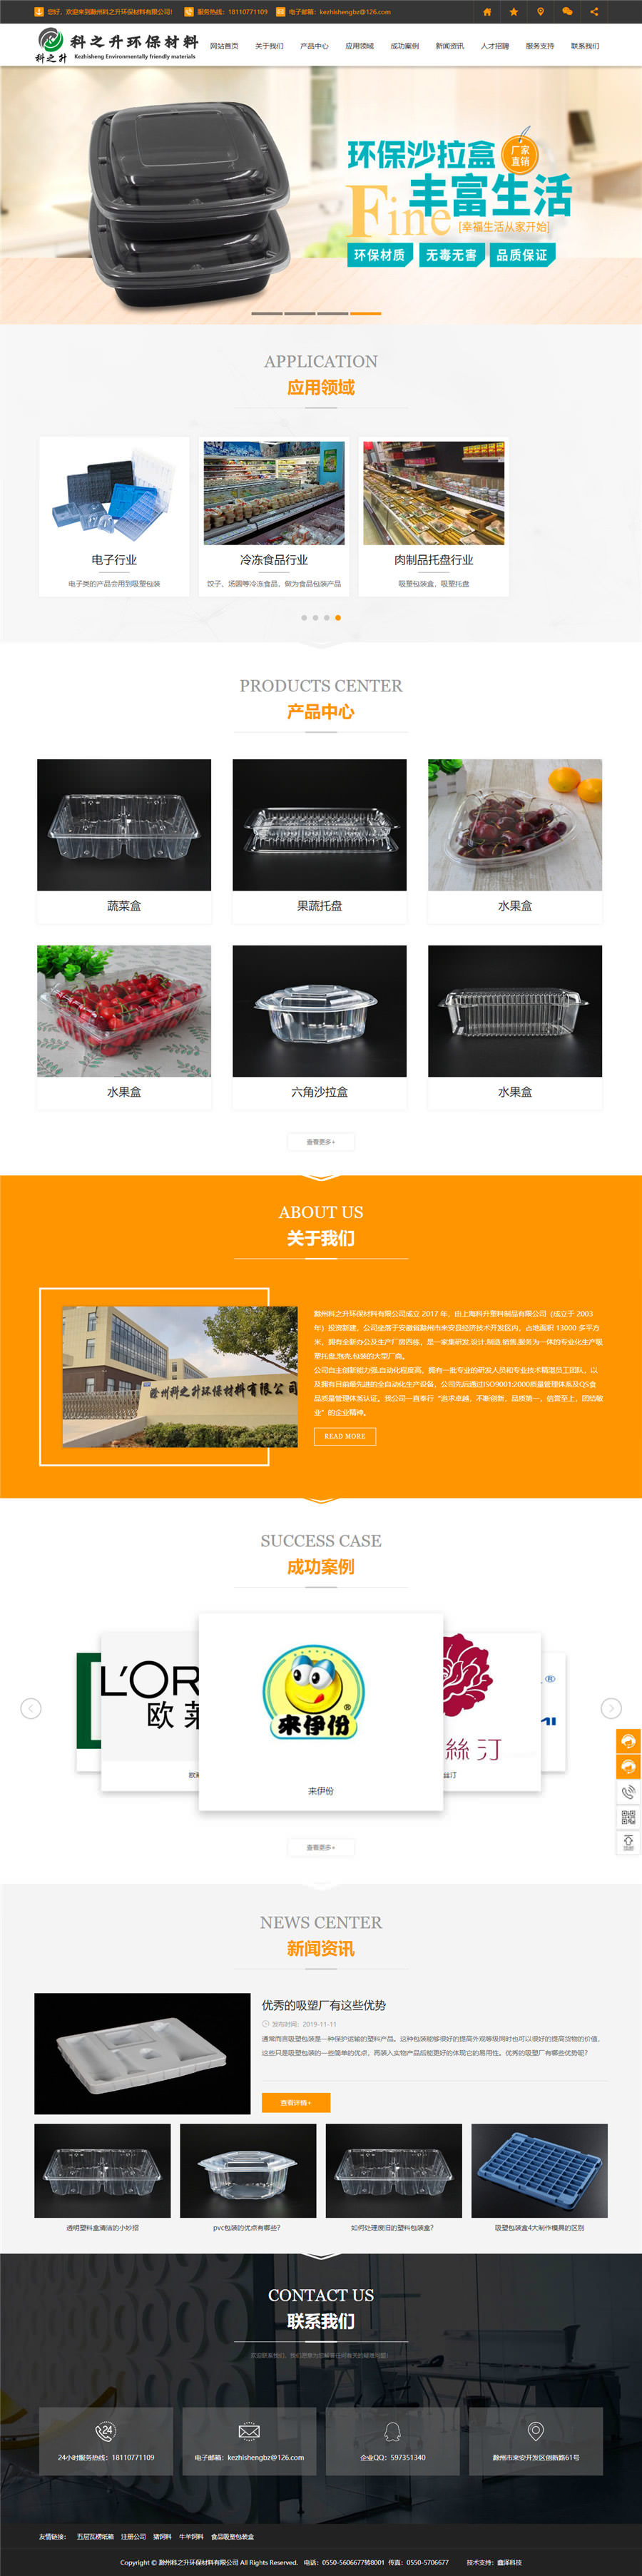 食品塑料包装盒-滁州科之升环保材料有限企业.jpg